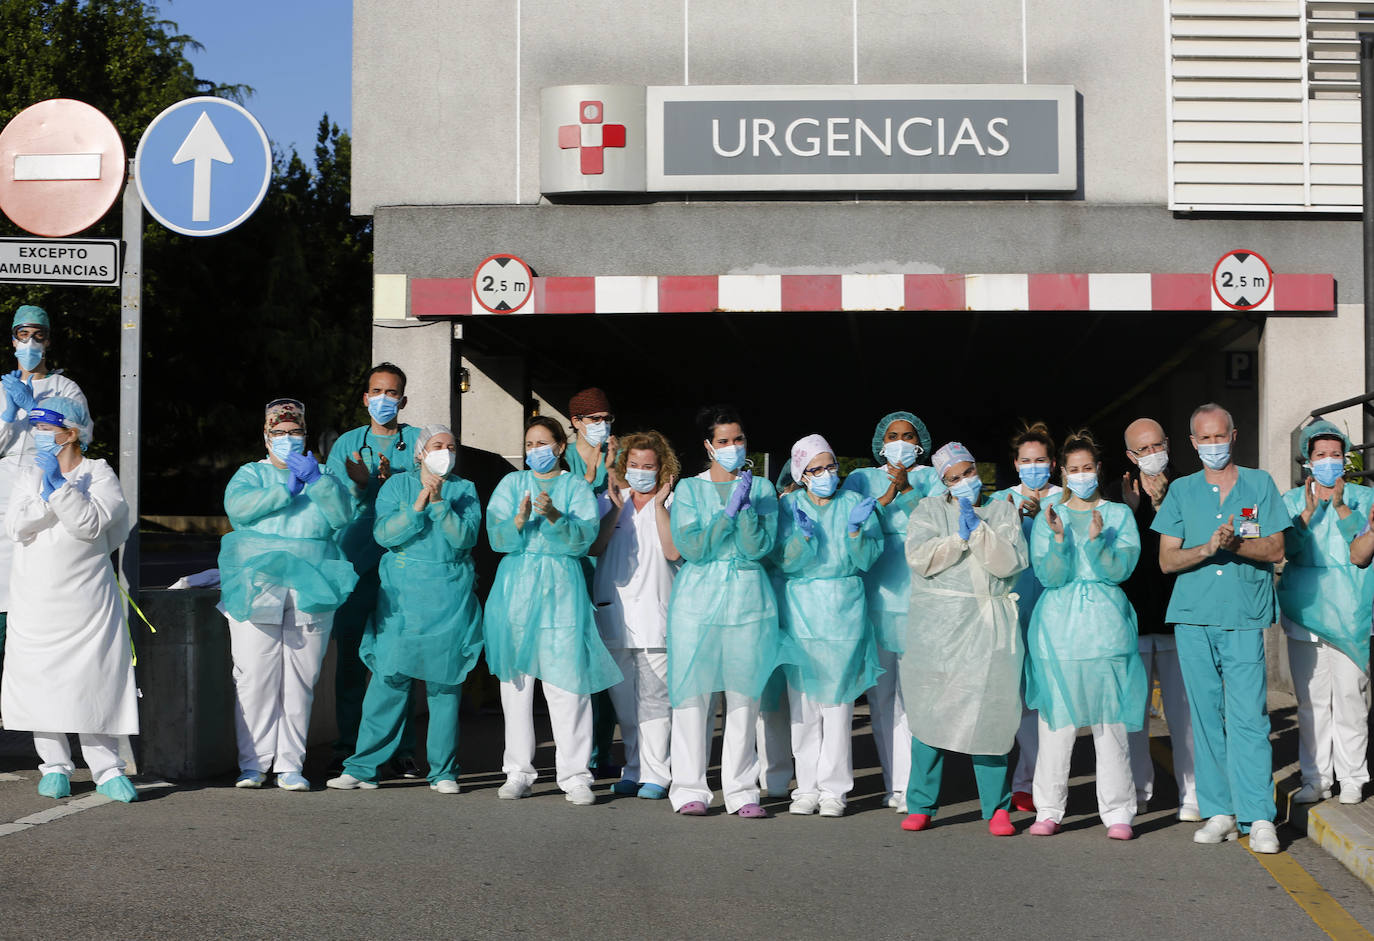 El jurado de los Premios Princesa otorgó el Premio Princesa de Asturias a los sanitarios españoles que trabajaron en primera línea frente al COVID-19 durante los últimos meses. Agradecieron el "heroico esfuerzo" de todos los profesionales de la sanidad: médicos, enfermeros, auxiliares, técnicos de ambulancia, celadores...